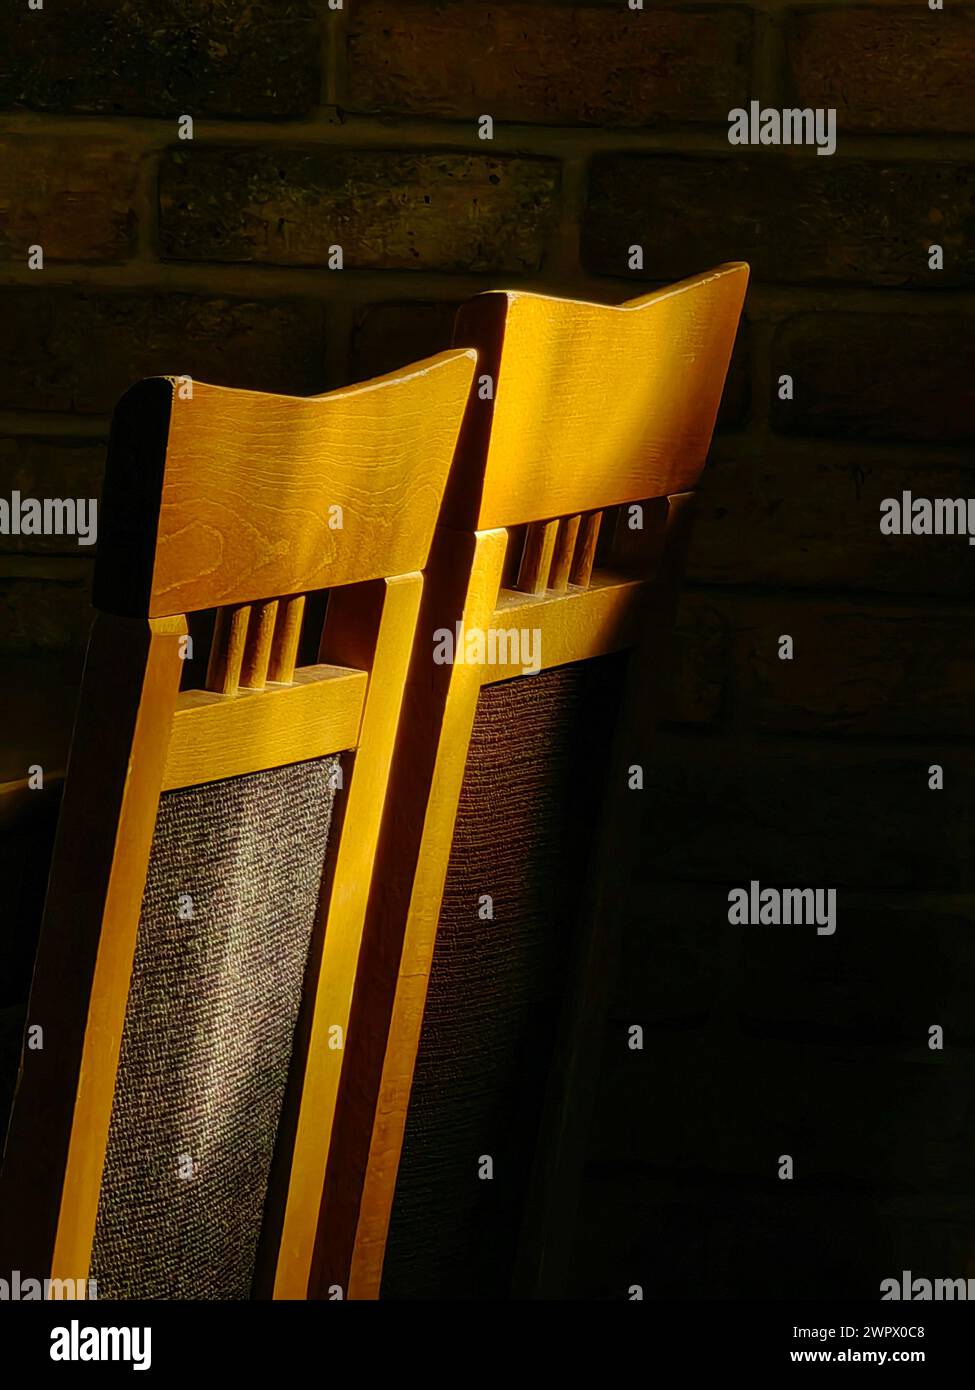 Posti a sedere illuminati dal sole. Illuminare due sedie marrone chiaro in uno spazio buio. Foto Stock